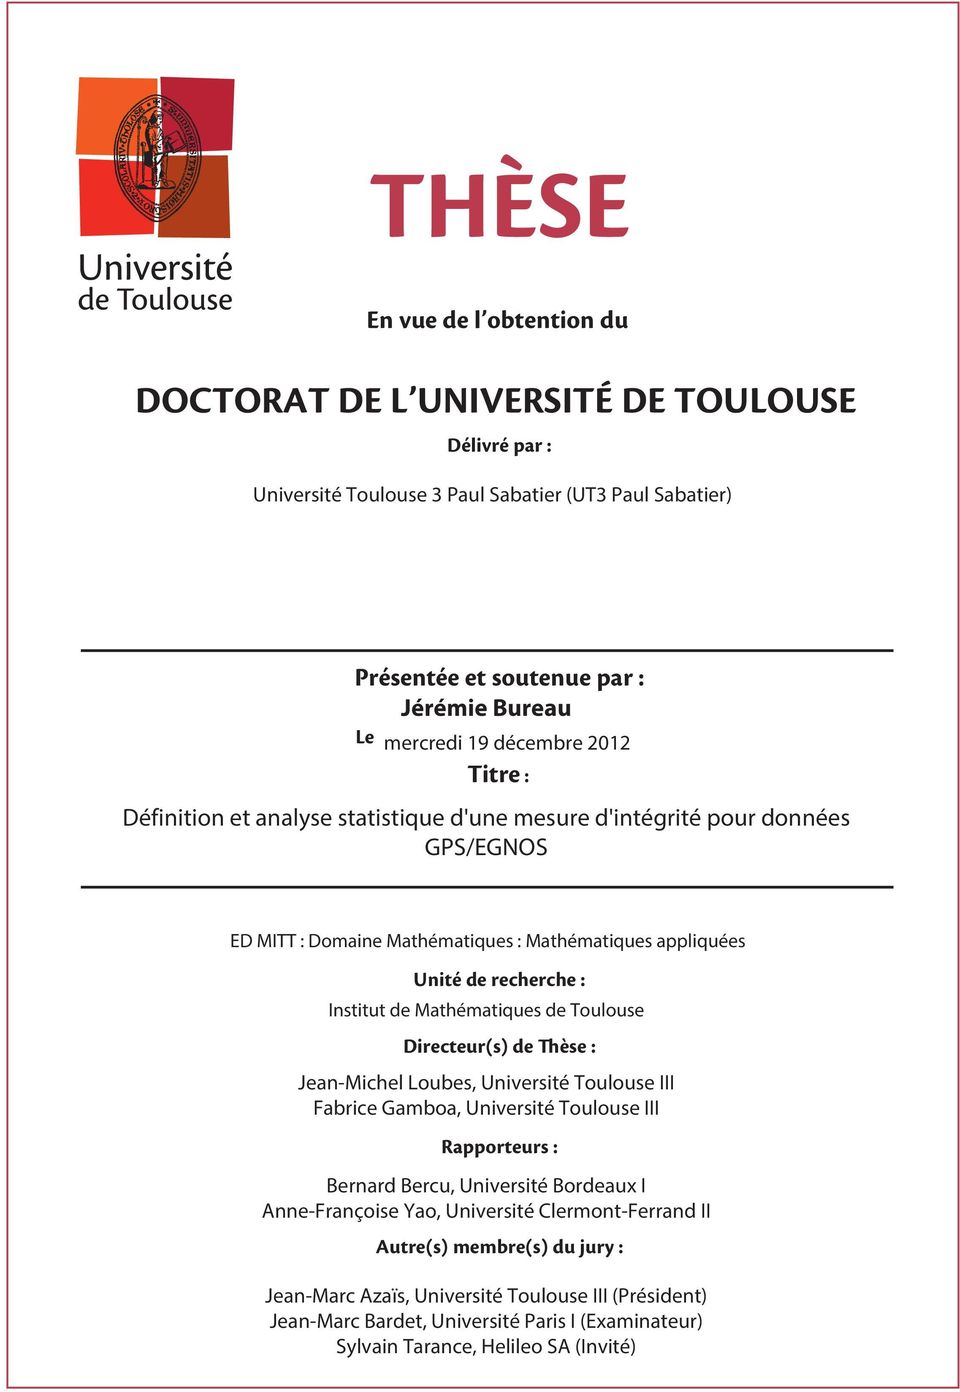 Jean-Michel Loubes, Université Toulouse III Fabrice Gamboa, Université Toulouse III Bernard Bercu, Université Bordeaux I Anne-Françoise Yao,